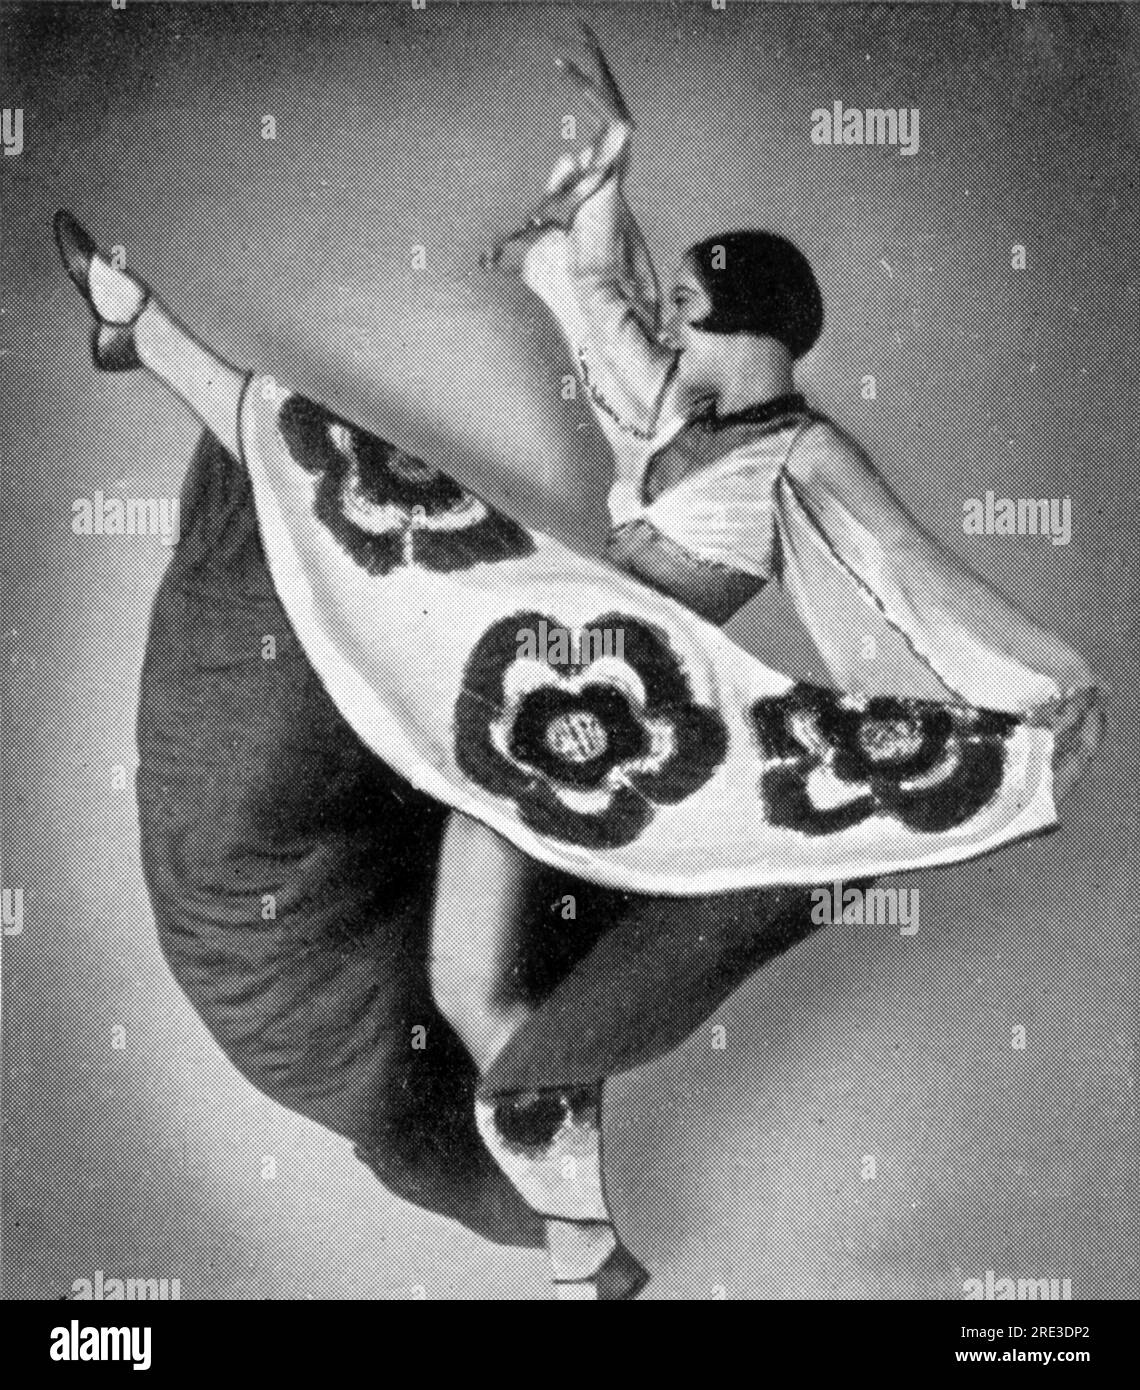 Wellin, Ines, deutsche Tänzerin, circa 1930, Zigarettenkarte, Sammelalbum "der kuenstlerische Tanz", ZUSÄTZLICHE-RECHTE-FREIGABE-INFO-NICHT-VERFÜGBAR Stockfoto